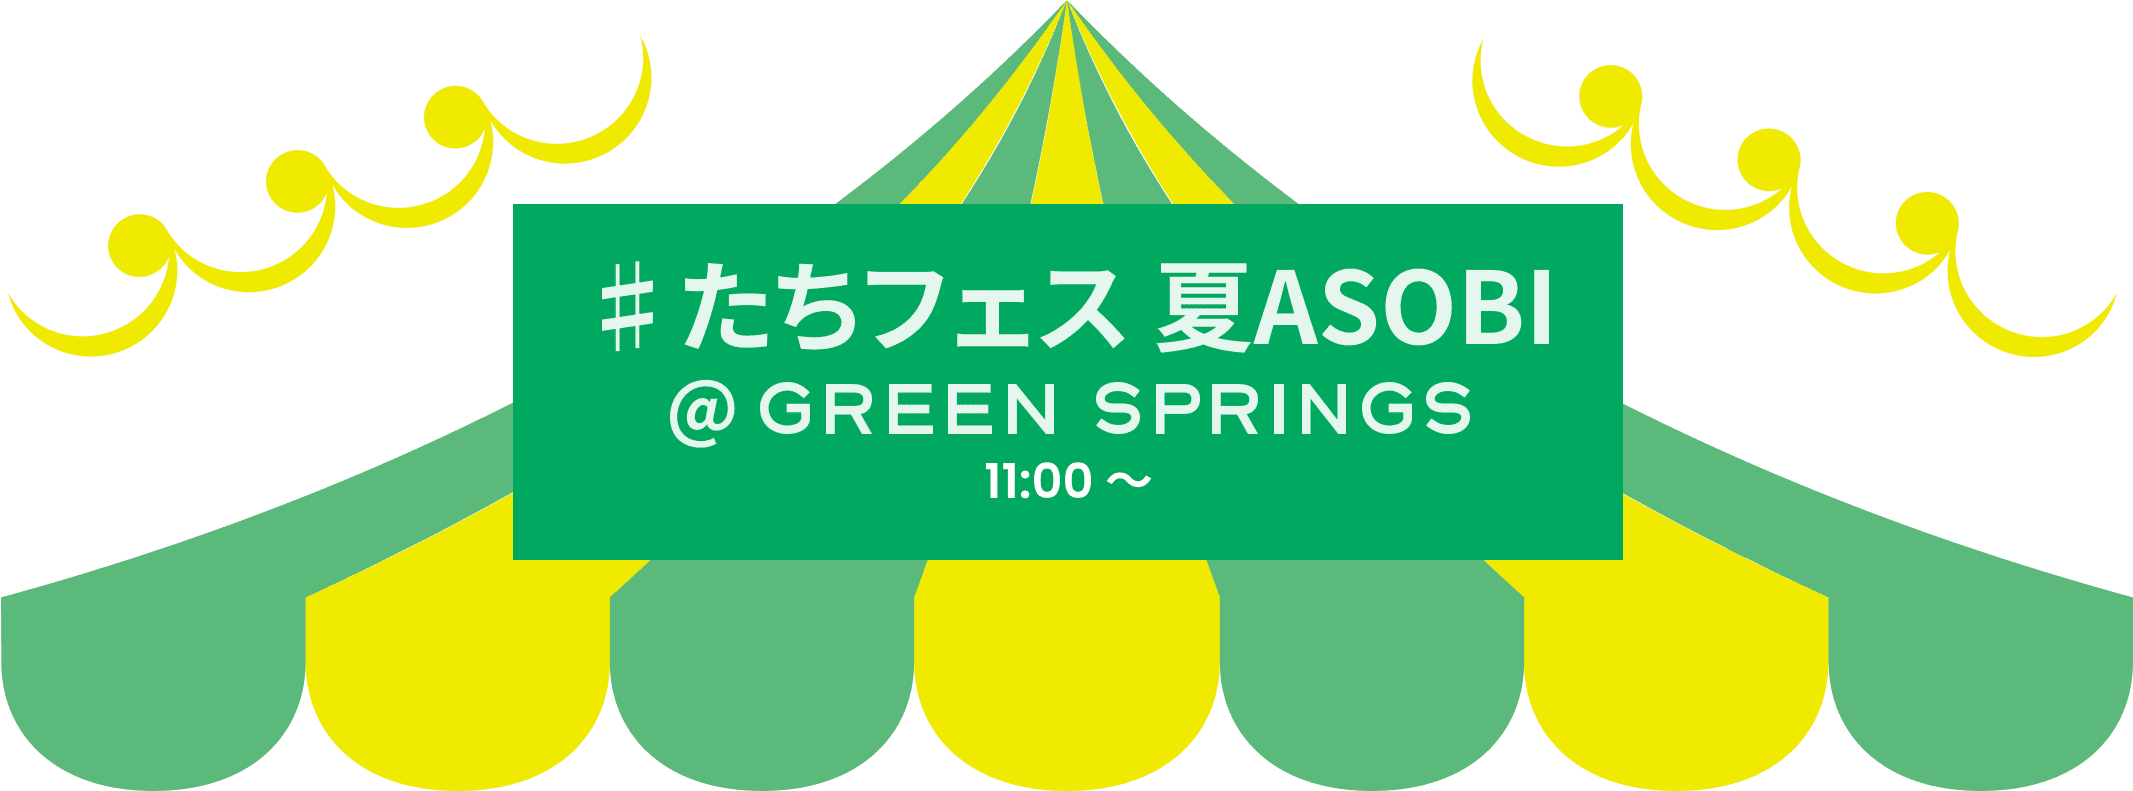 #たちフェス 夏ASOBI @GREEN SPRINGS